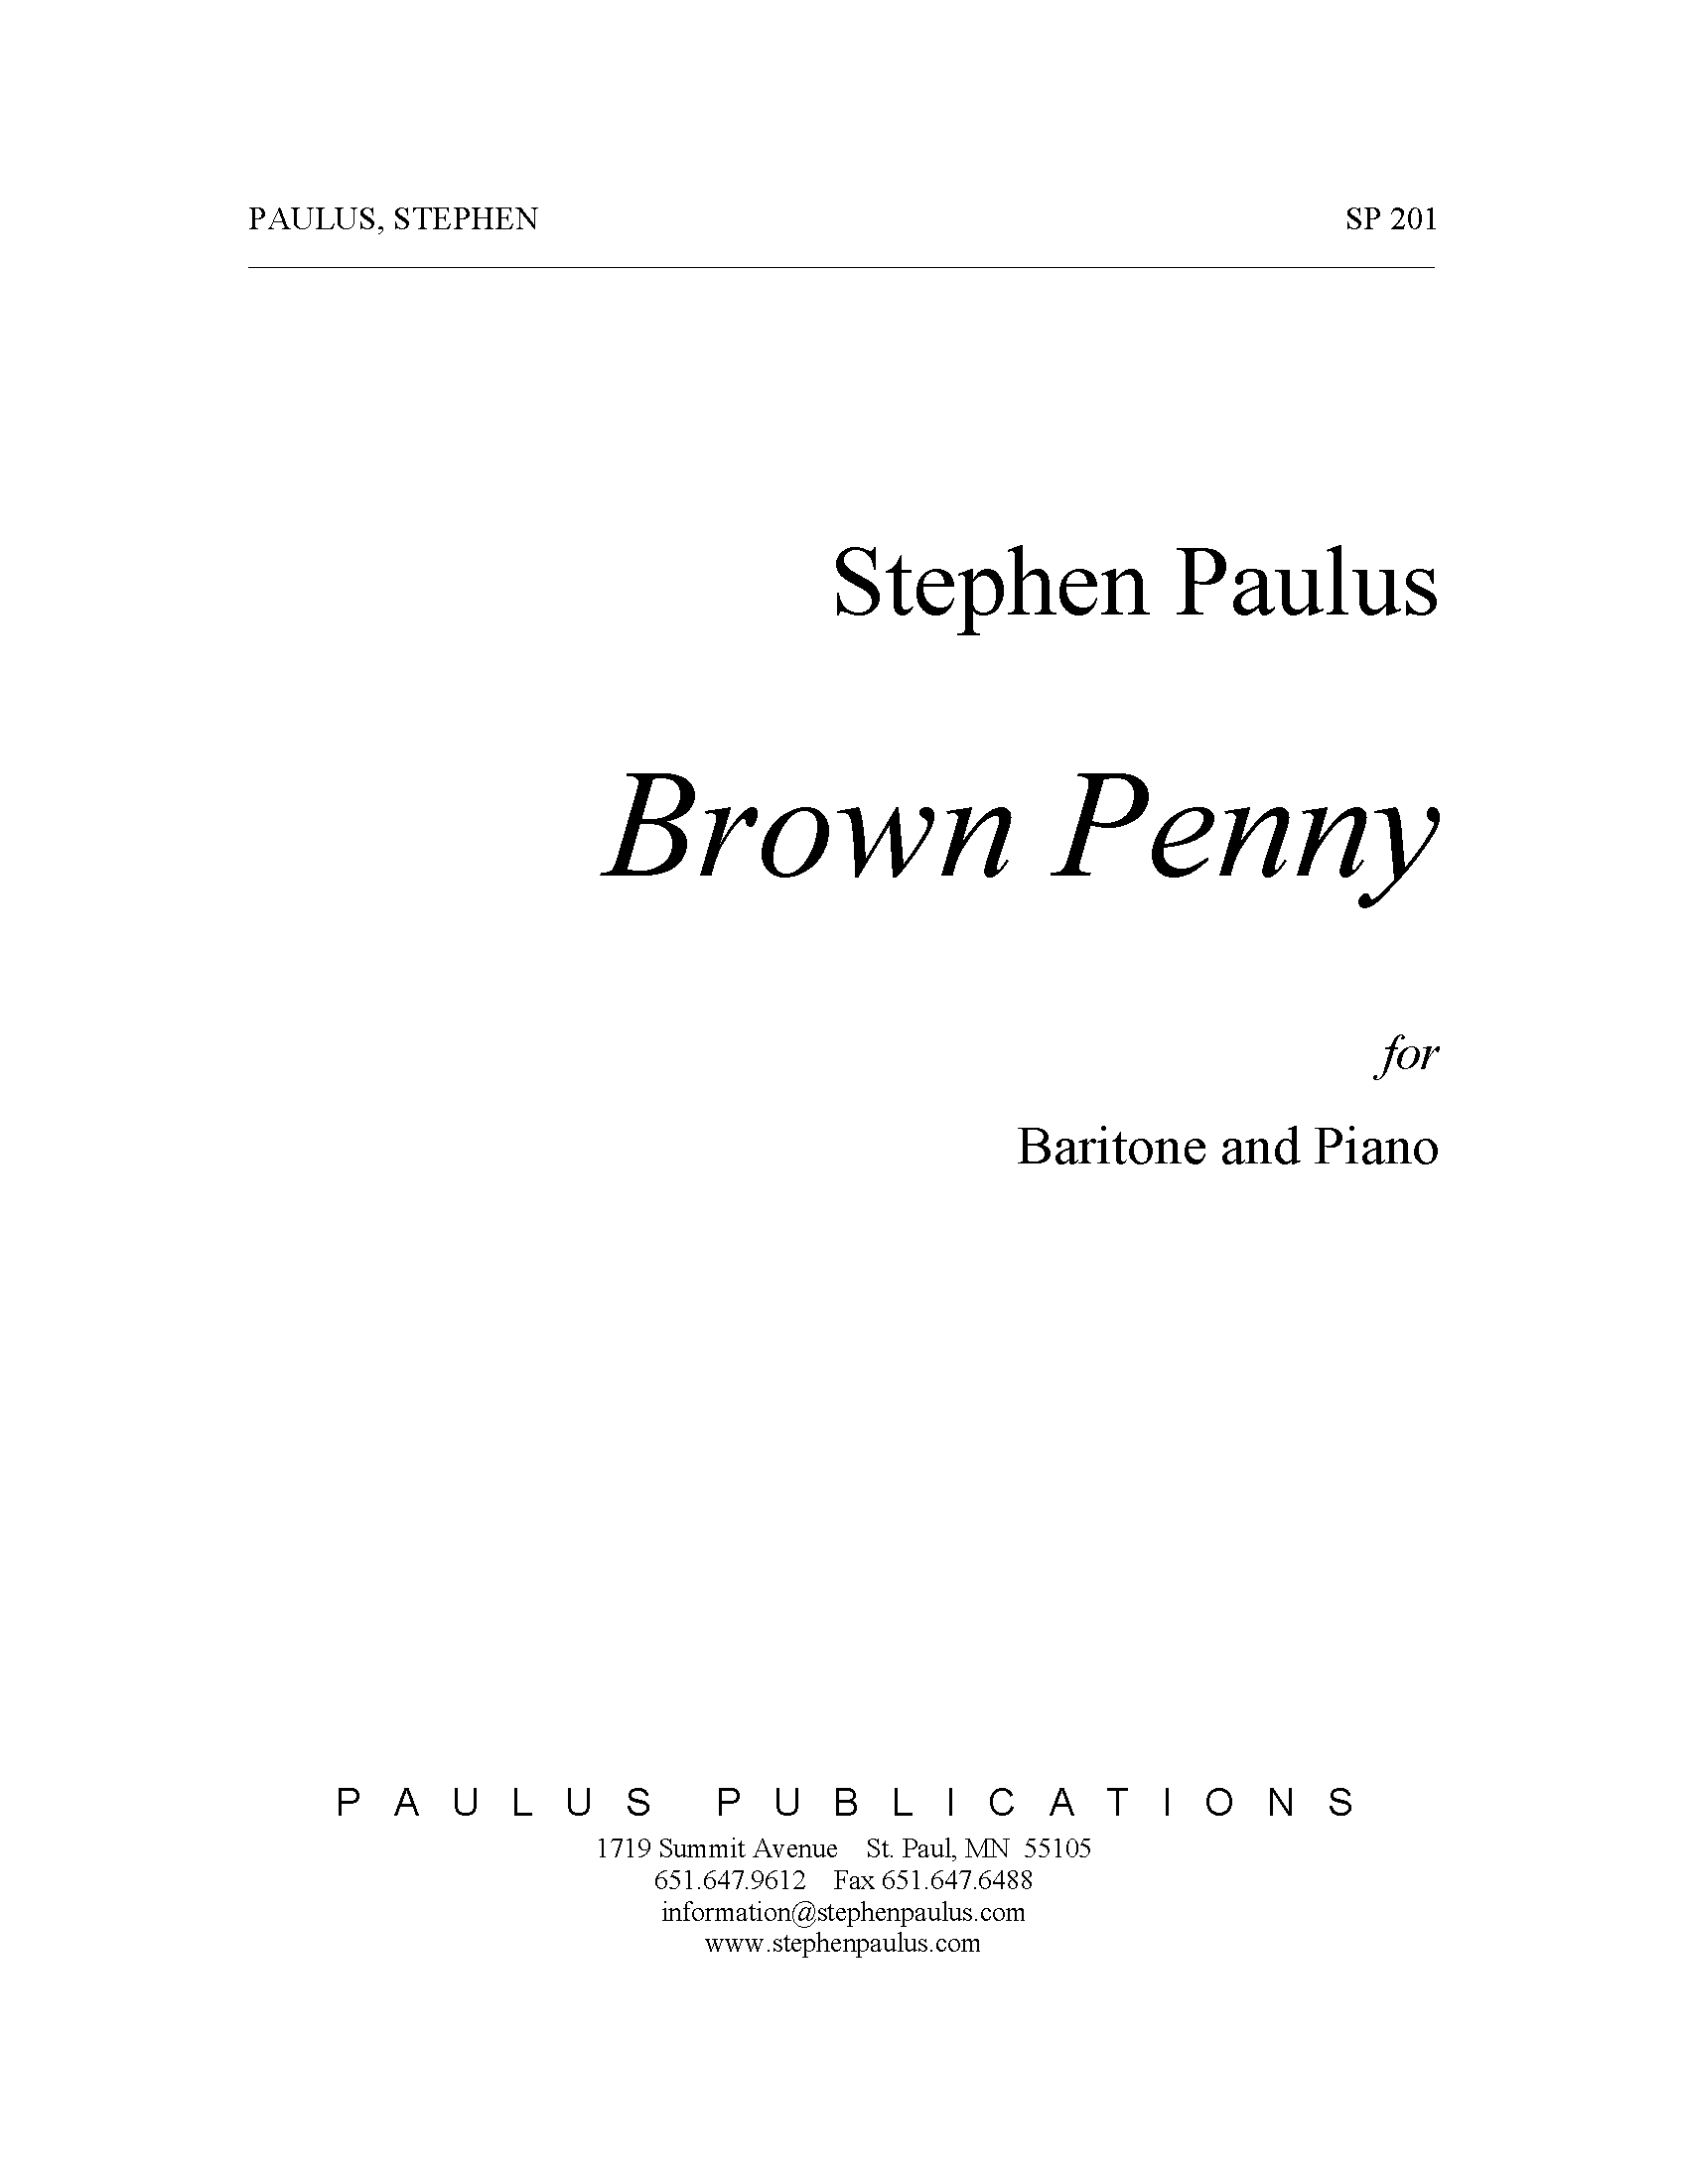 Brown Penny for Baritone & Piano